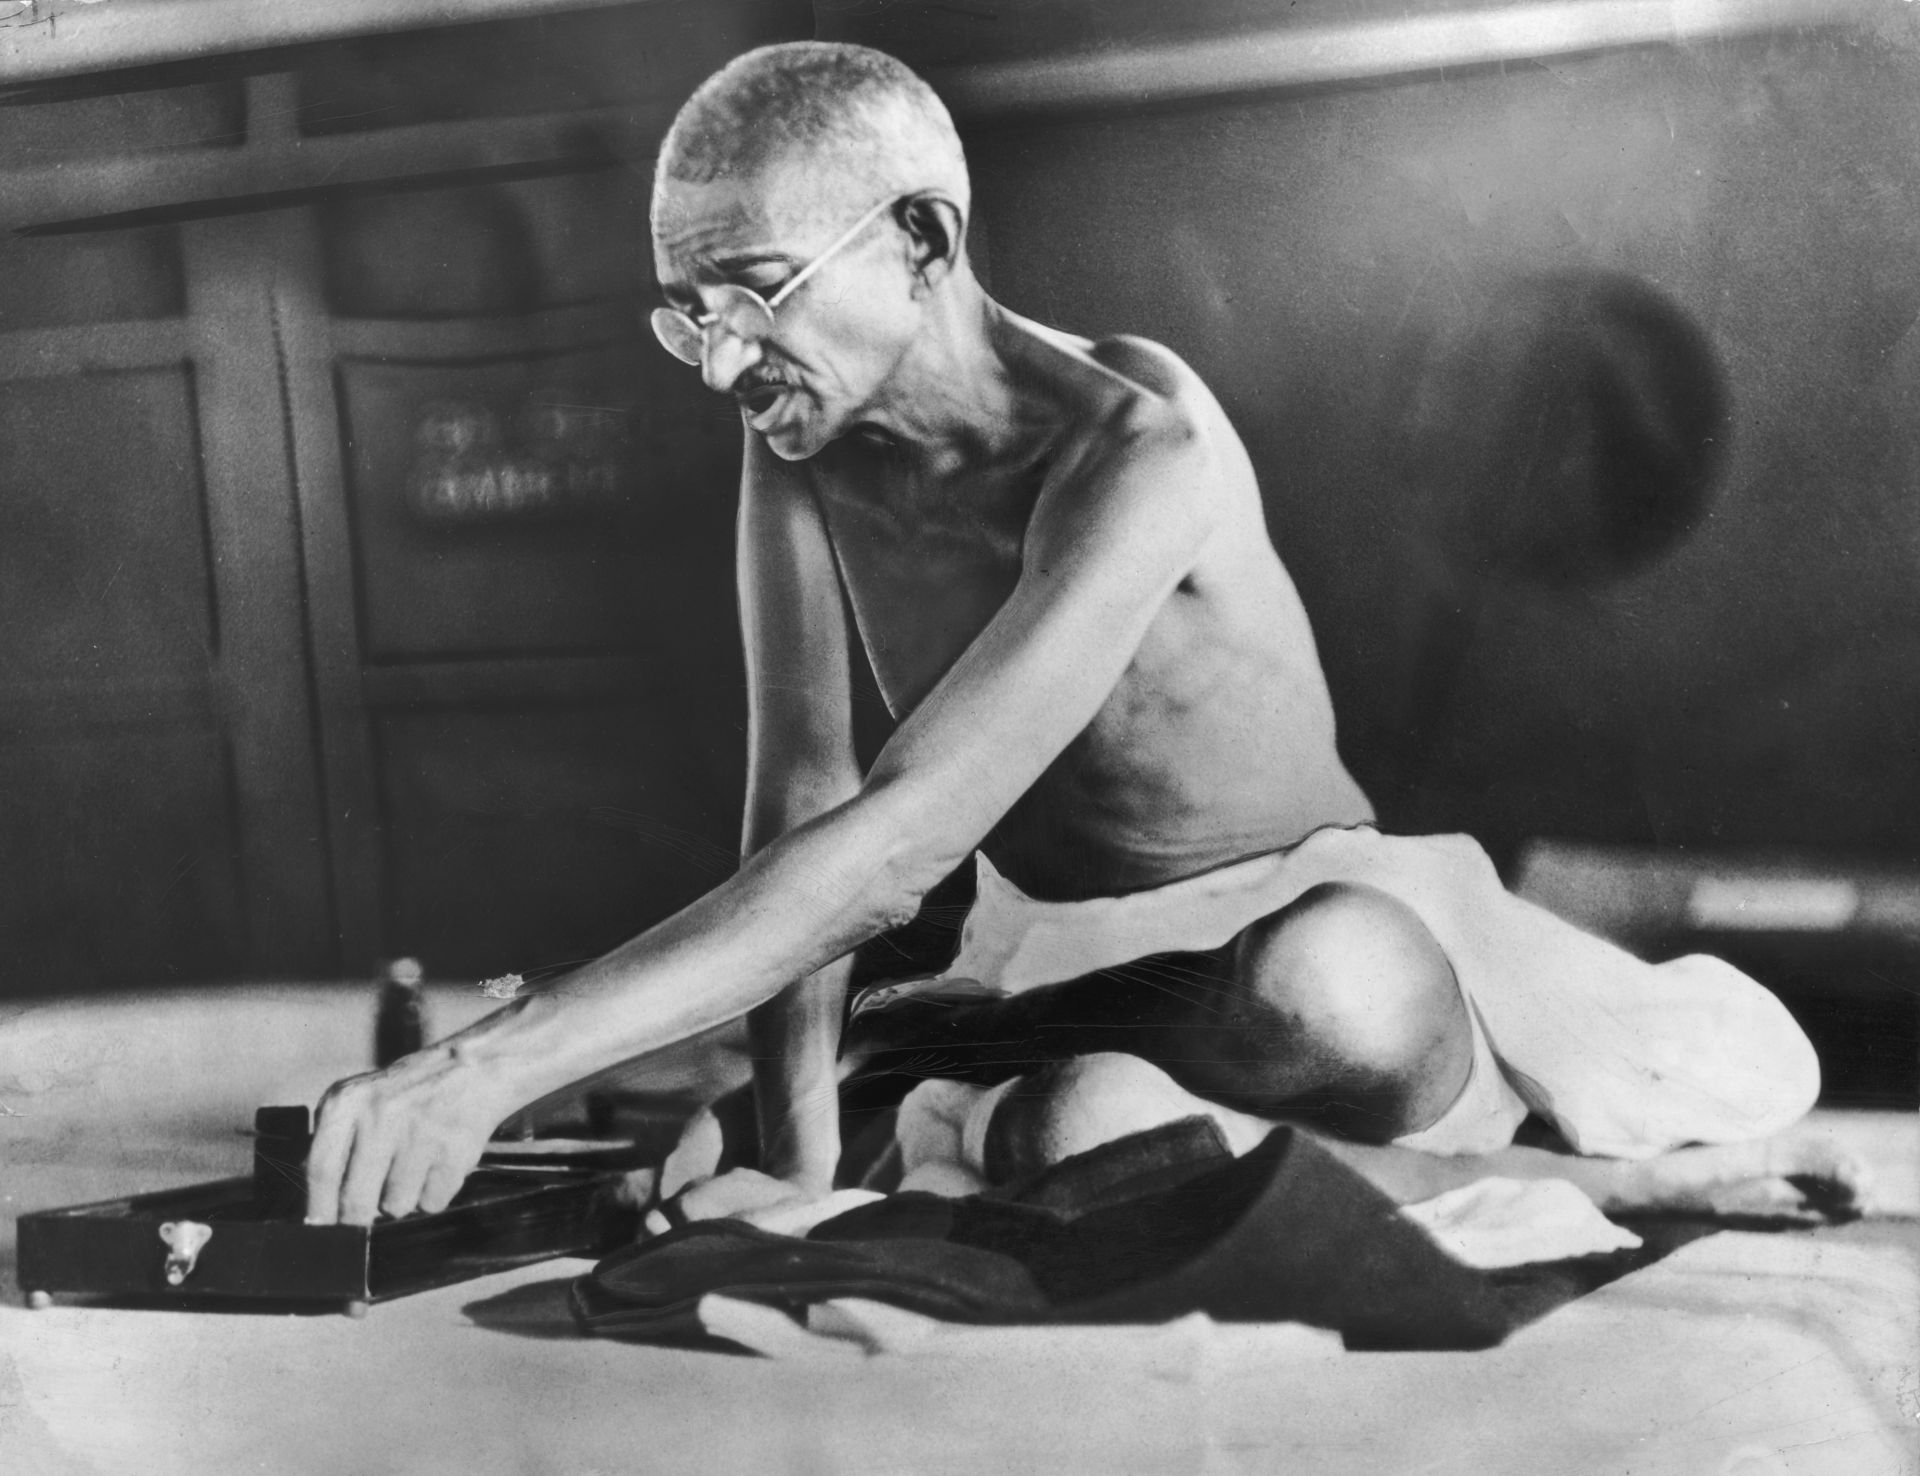  Махатма Ганди към 1930 година 